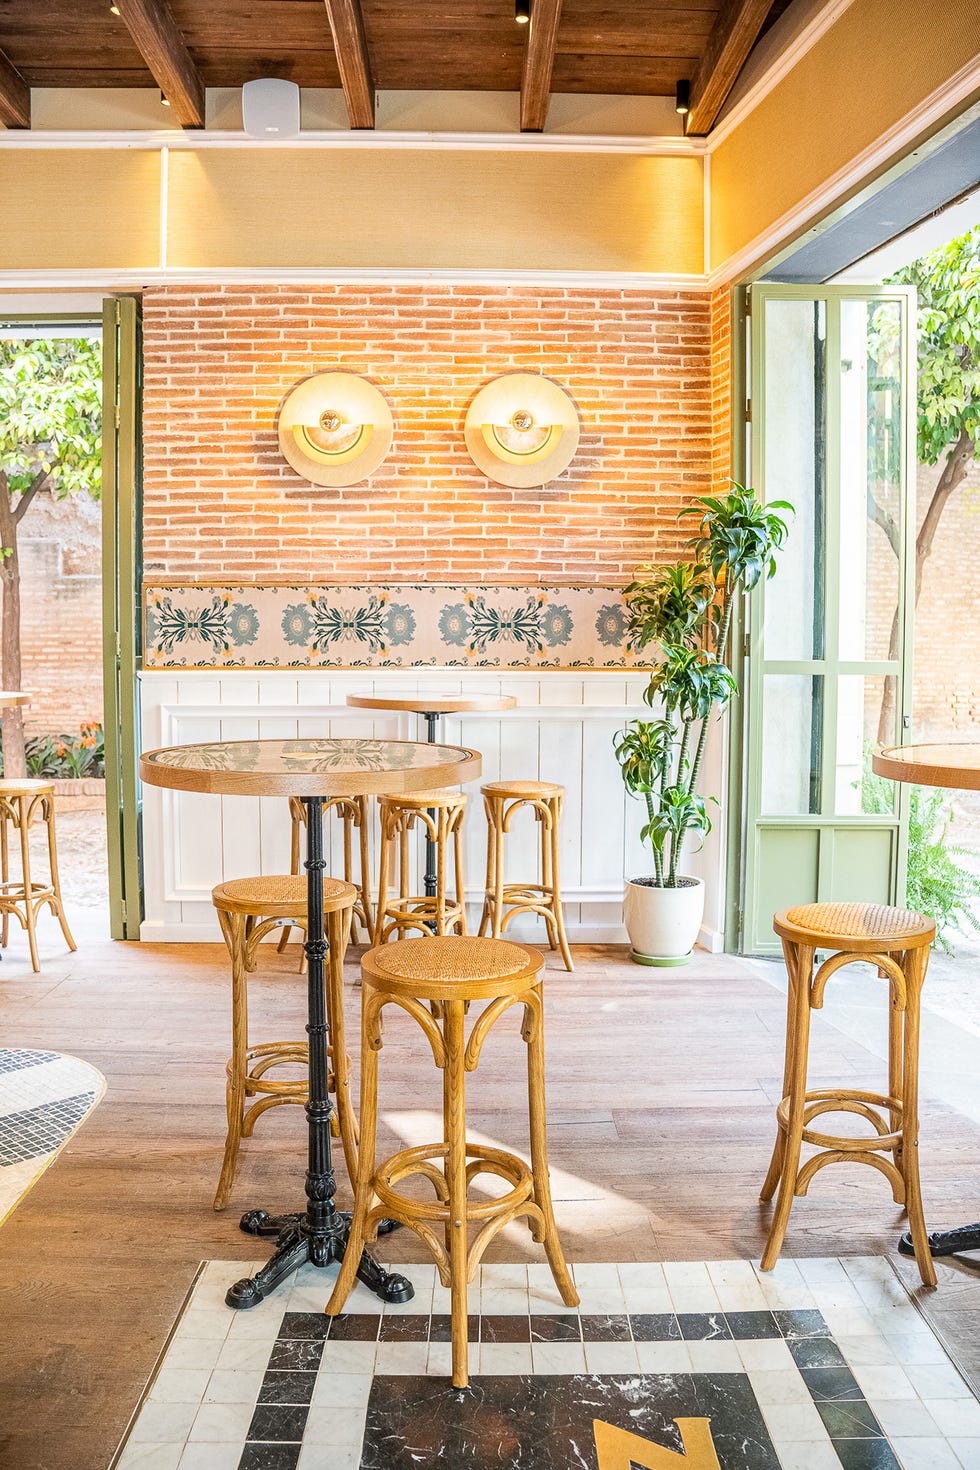 restaurante café santacruz en sevilla